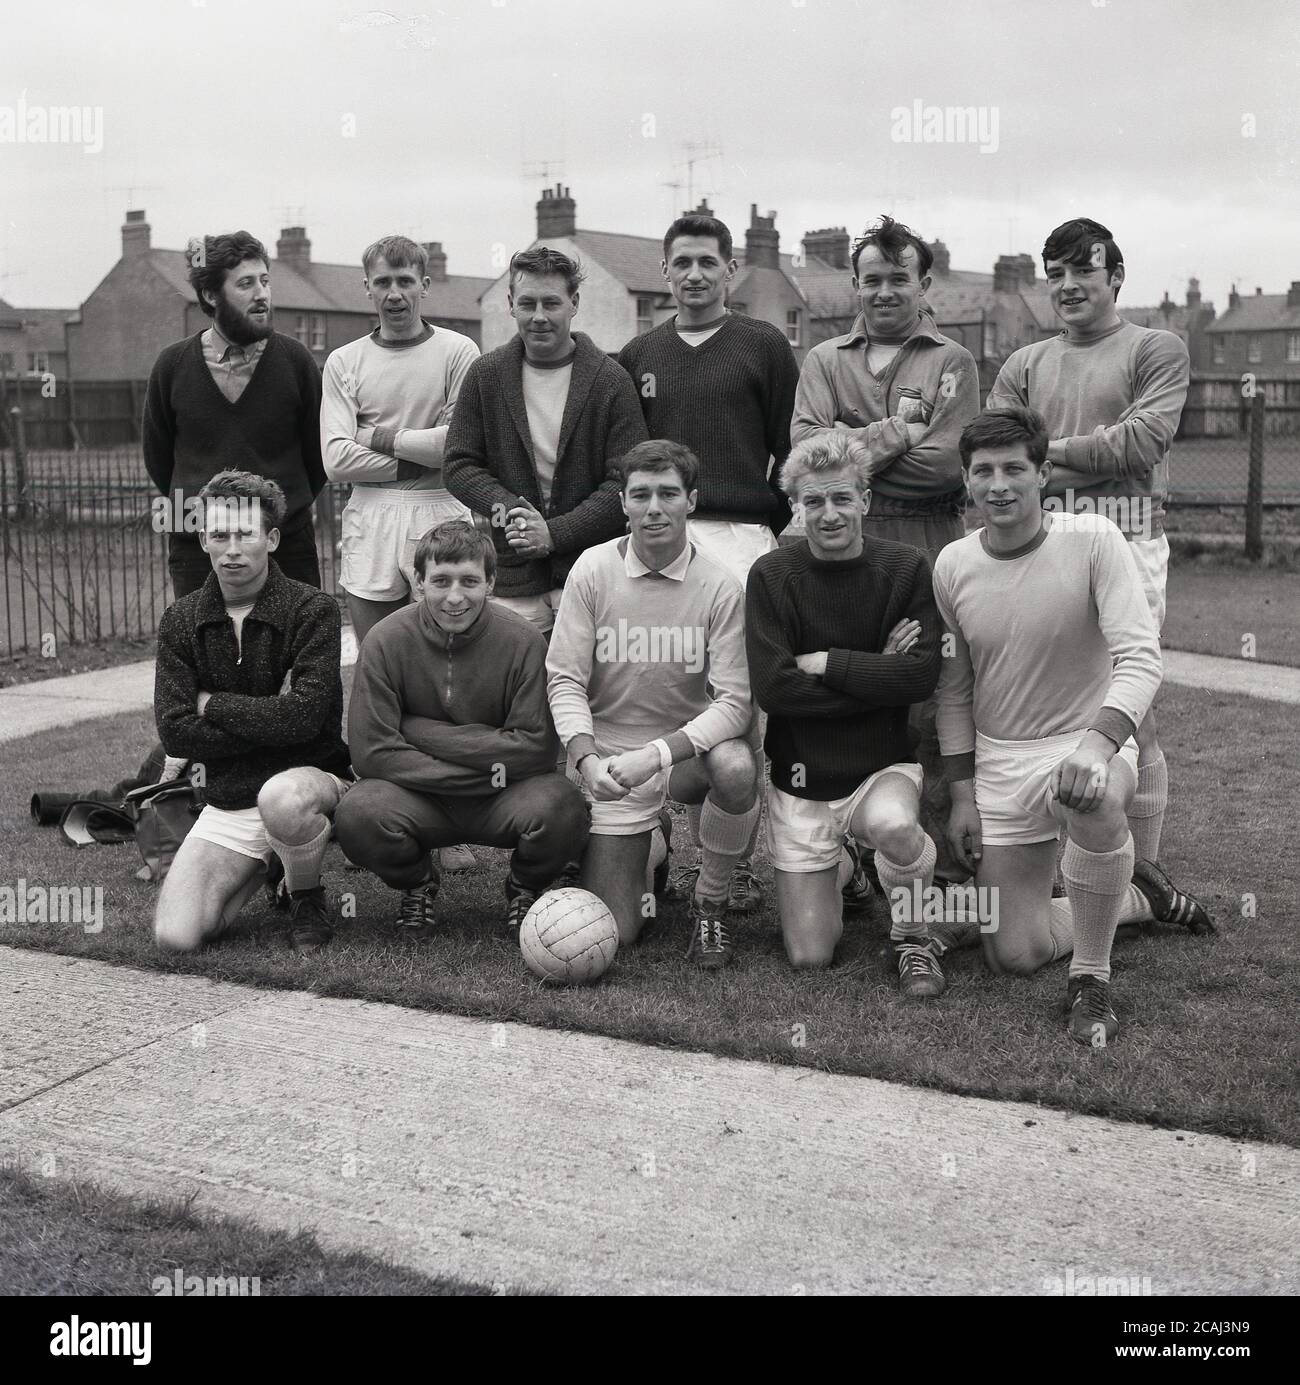 1965, histórico, equipo de fútbol del pueblo aficionado, foto de grupo,  mostrando el equipo de fútbol, botas y ropa deportiva del día, Bucks,  Inglaterra, Reino Unido. Once hombres están en la foto,